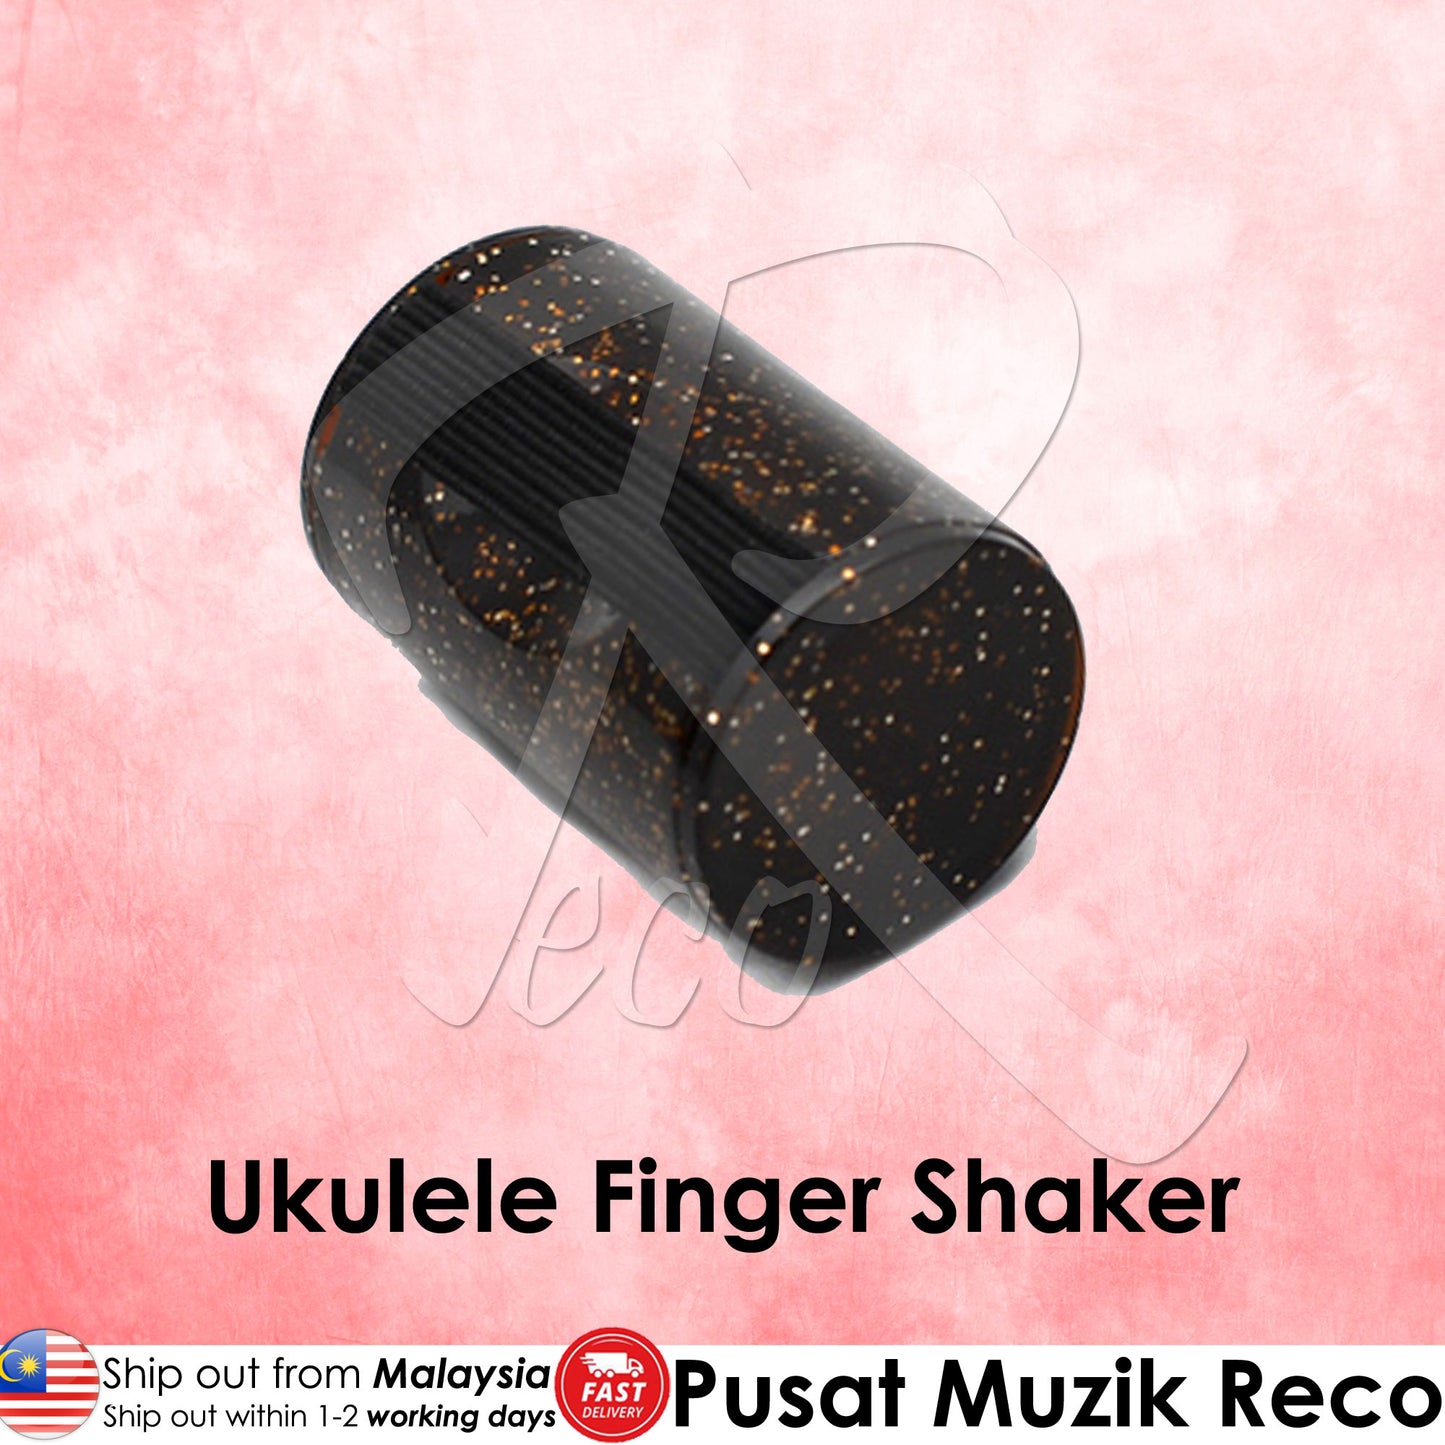 Ukulele Finger Shaker - Recomusic